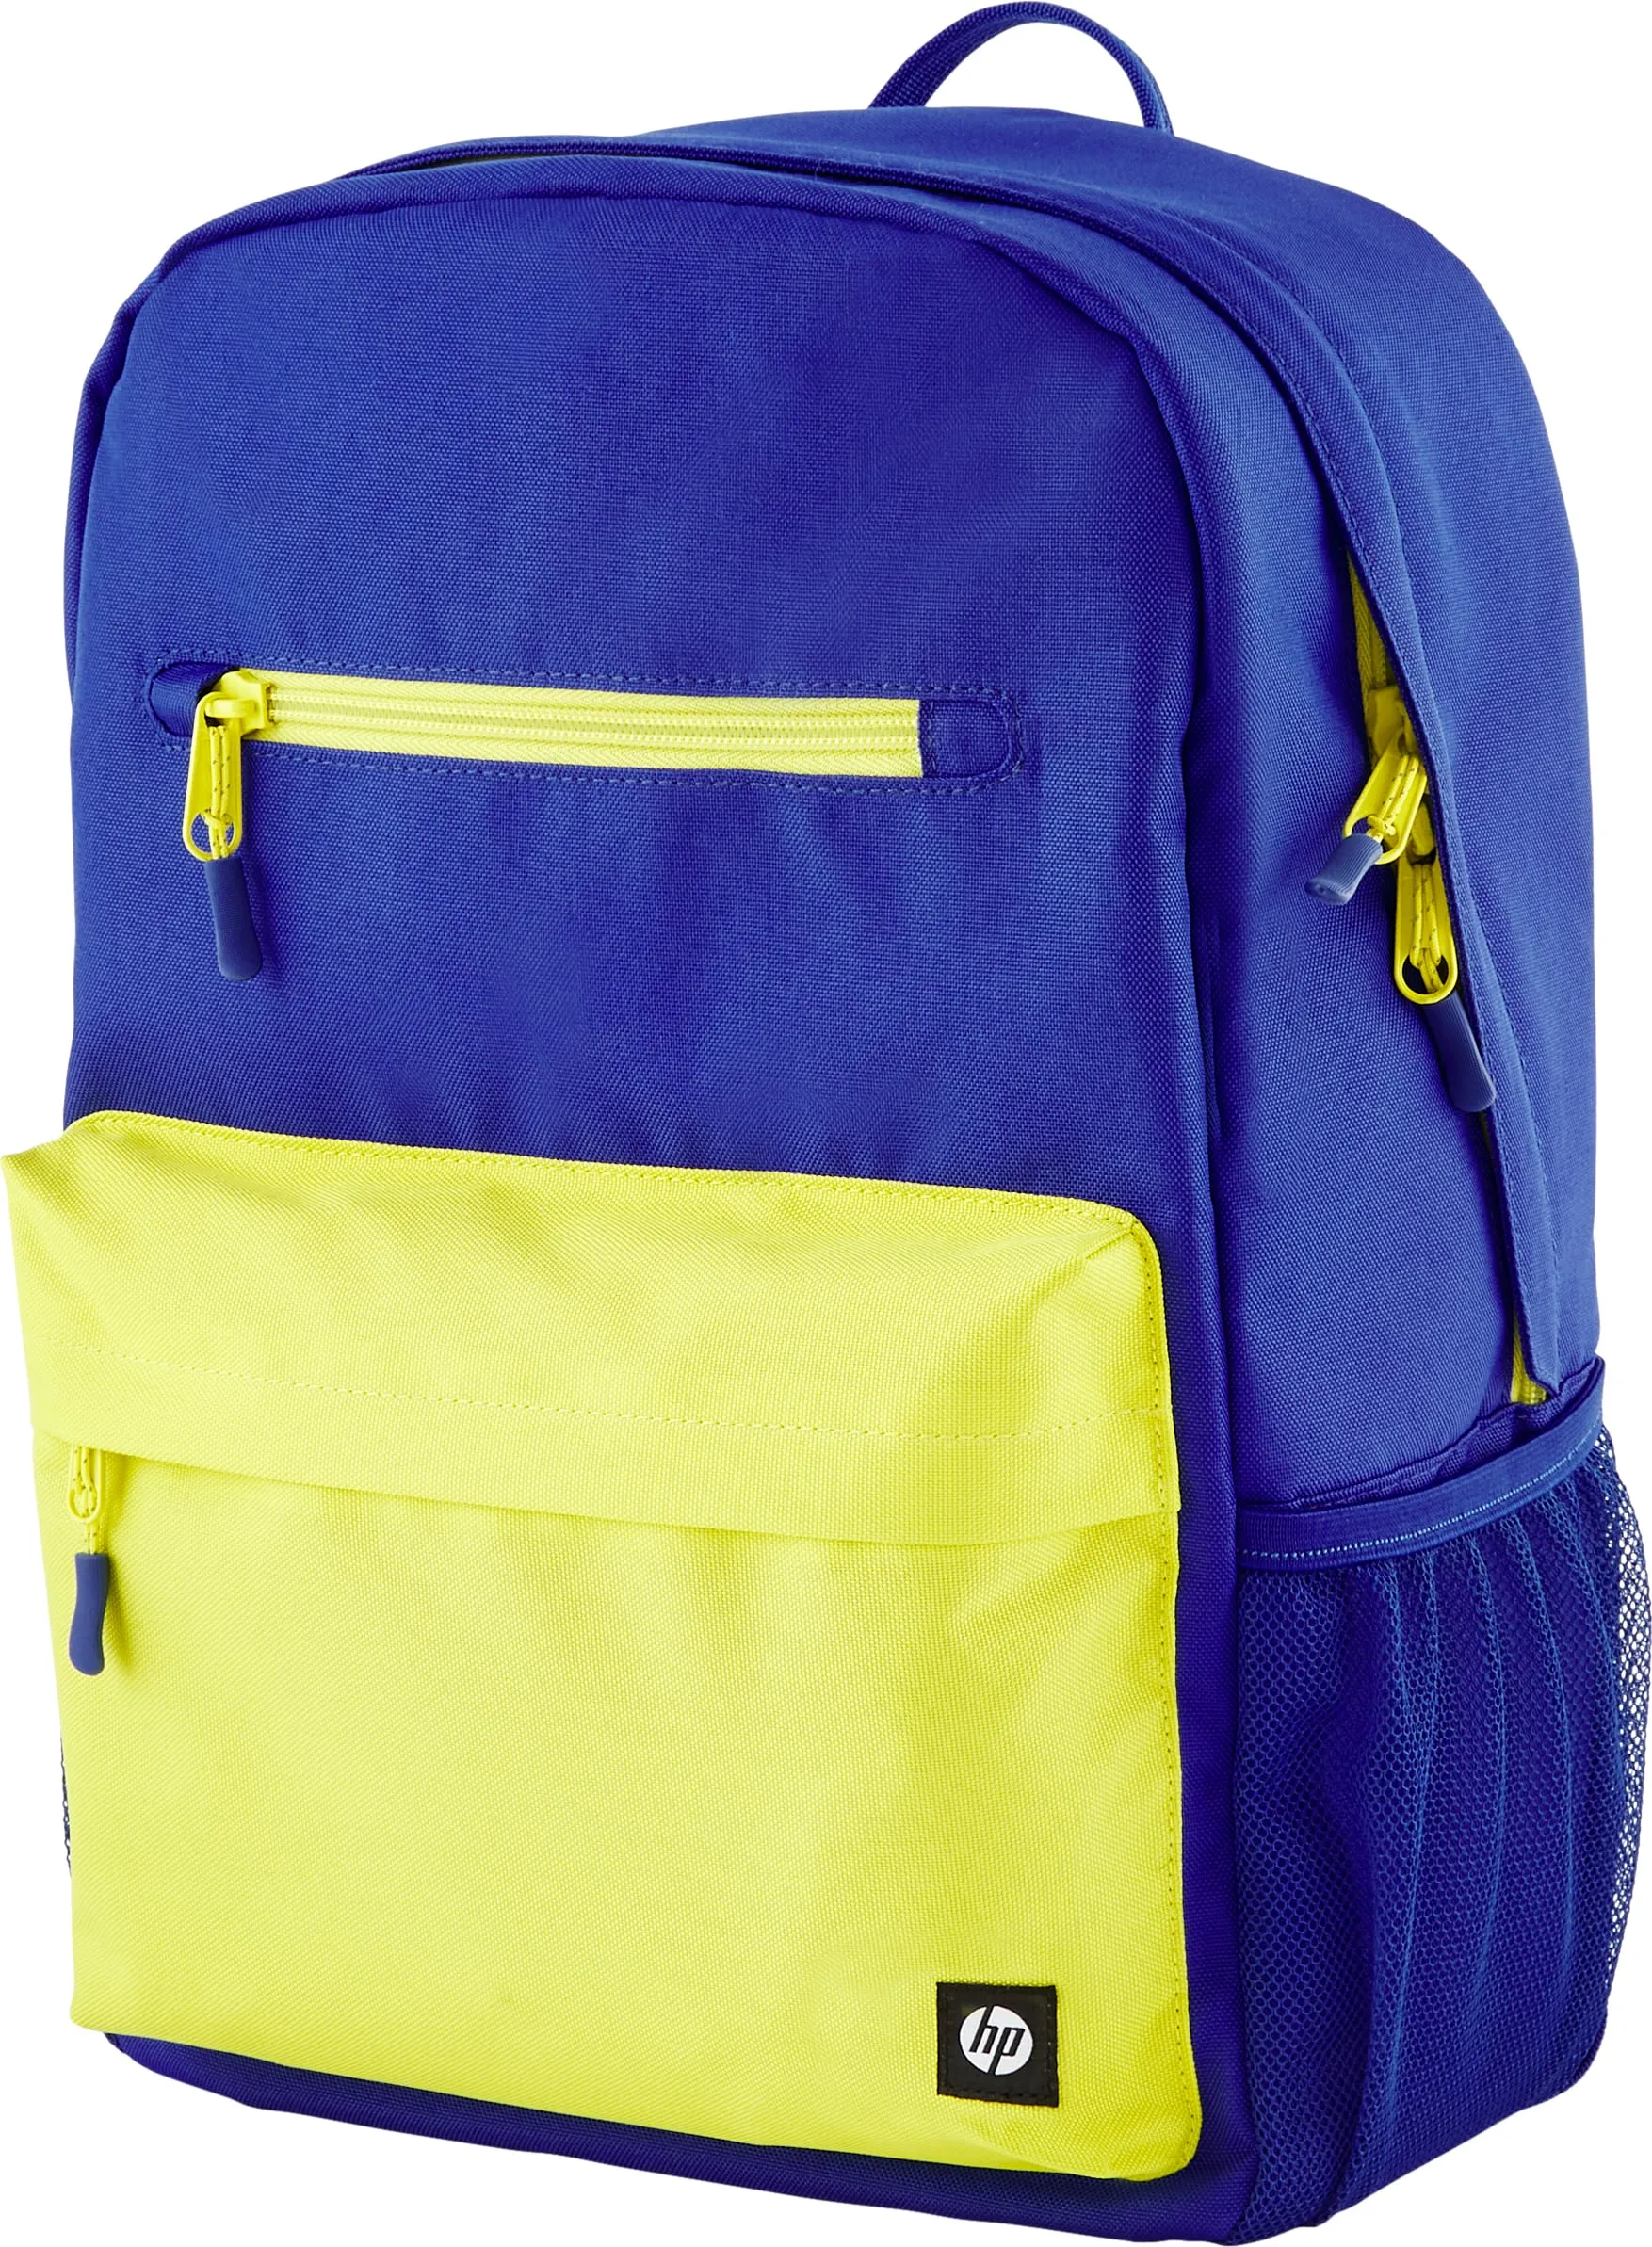 Vente HP Campus Blue Backpack HP au meilleur prix - visuel 2